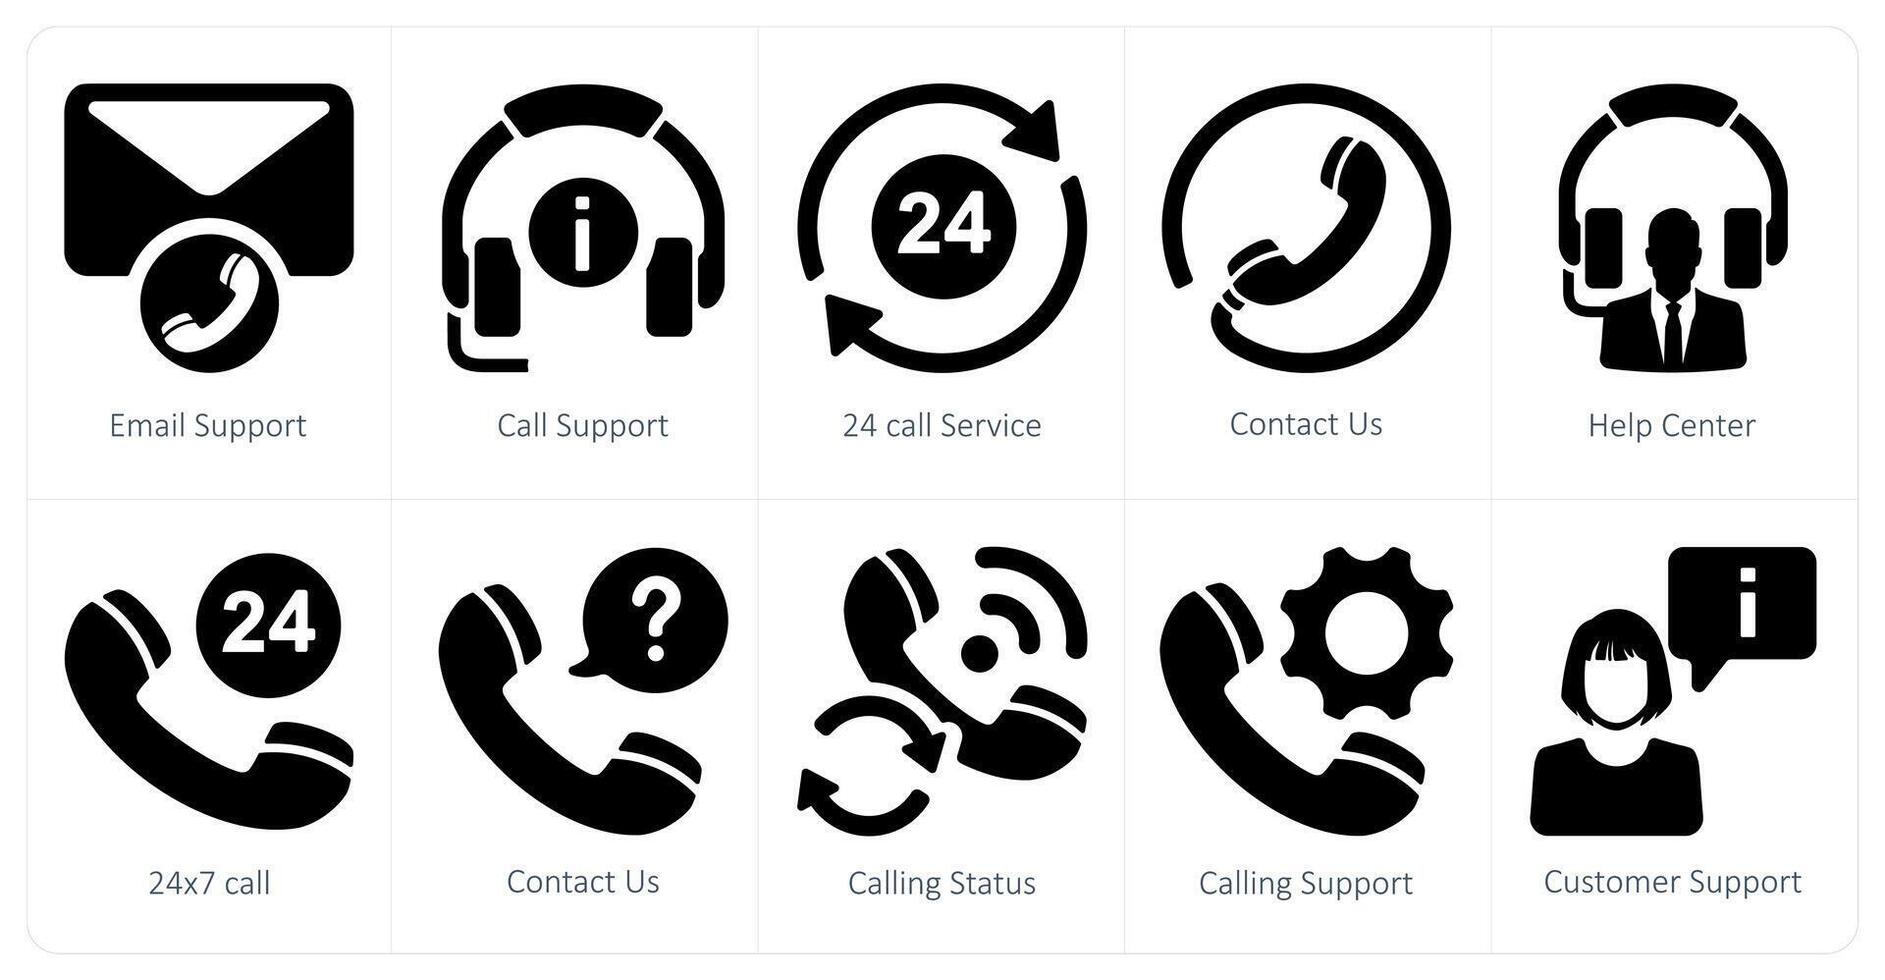 uma conjunto do 10 cliente Apoio, suporte ícones Como o email apoiar, ligar apoiar, 24 ligar serviço vetor